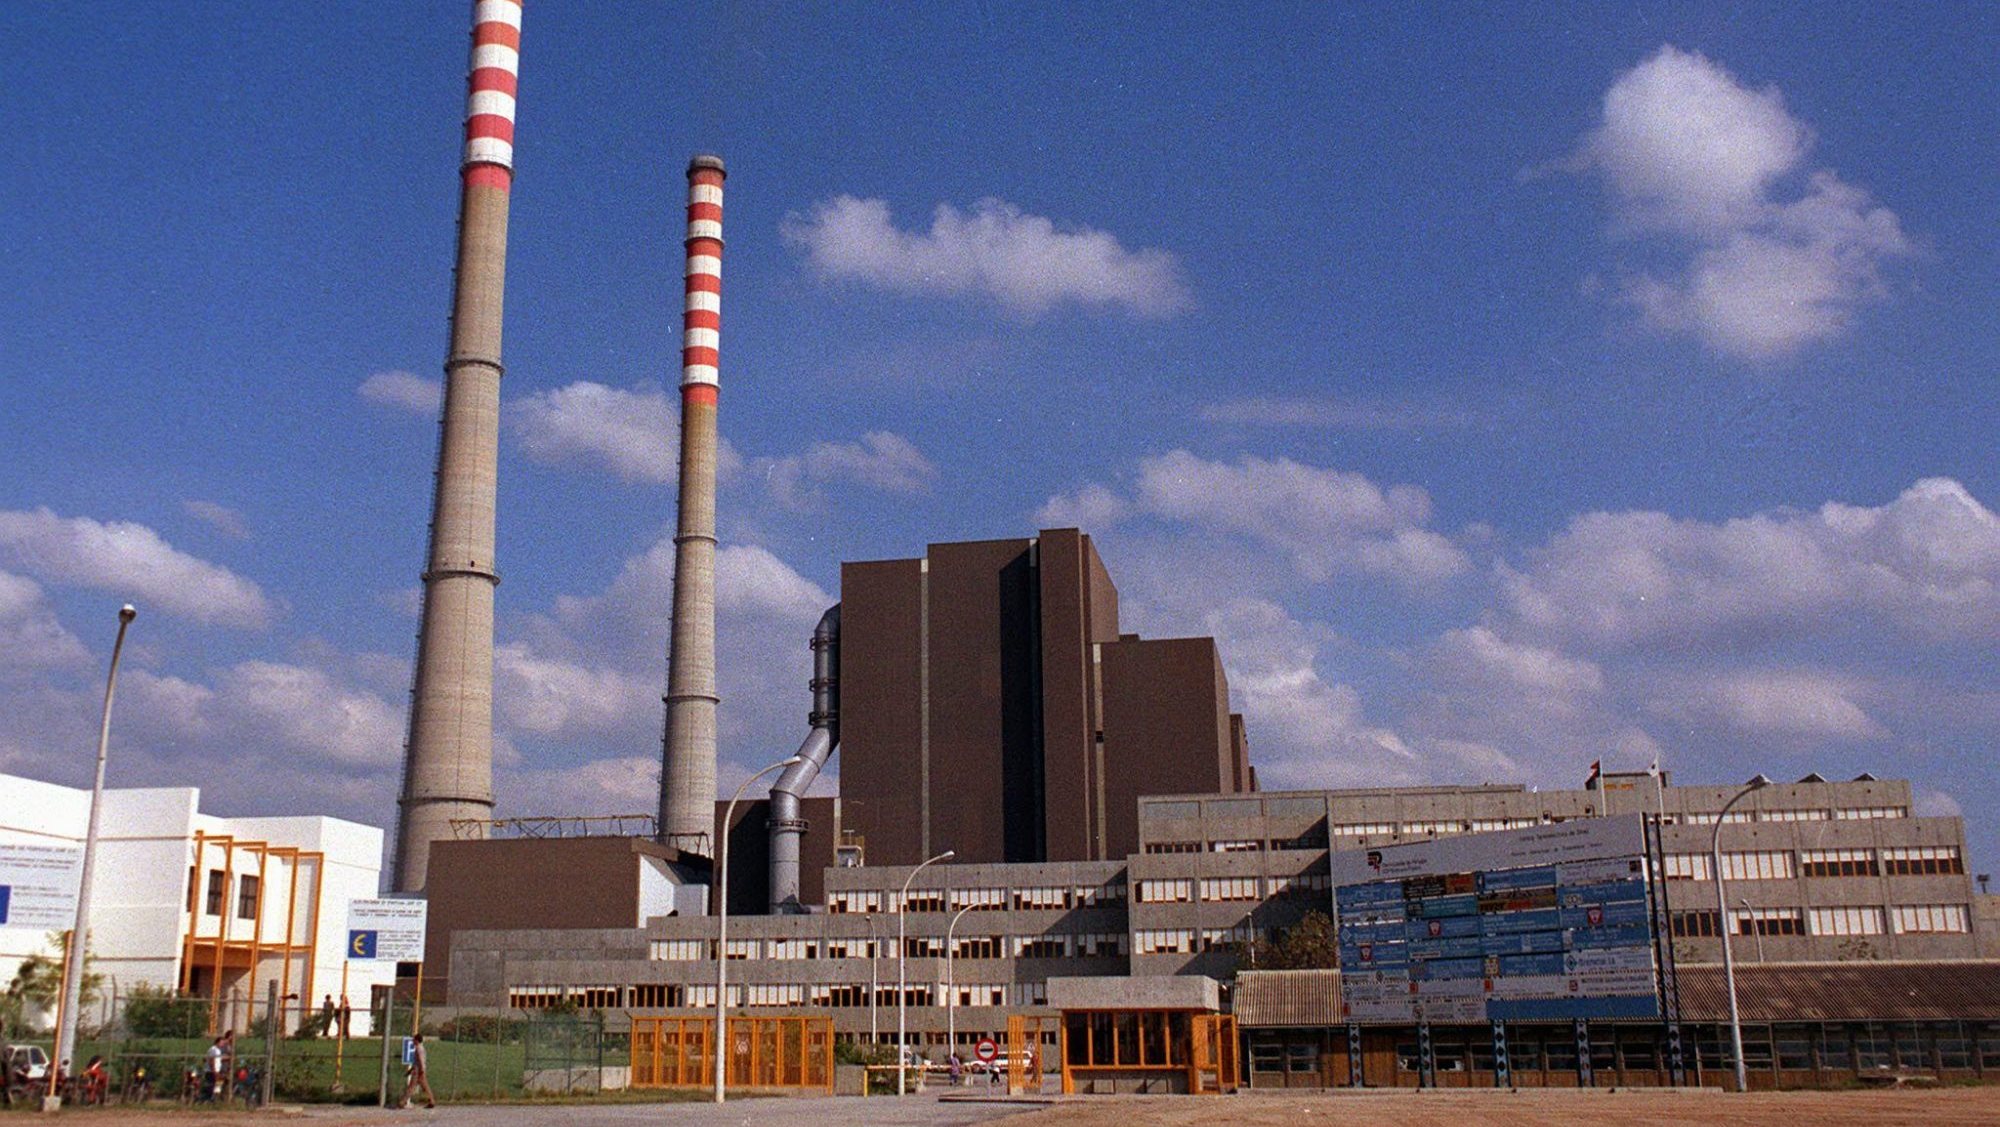 Central termoelétrica de Sines terminou em 2019 o tempo previsto de vida de trinta anos